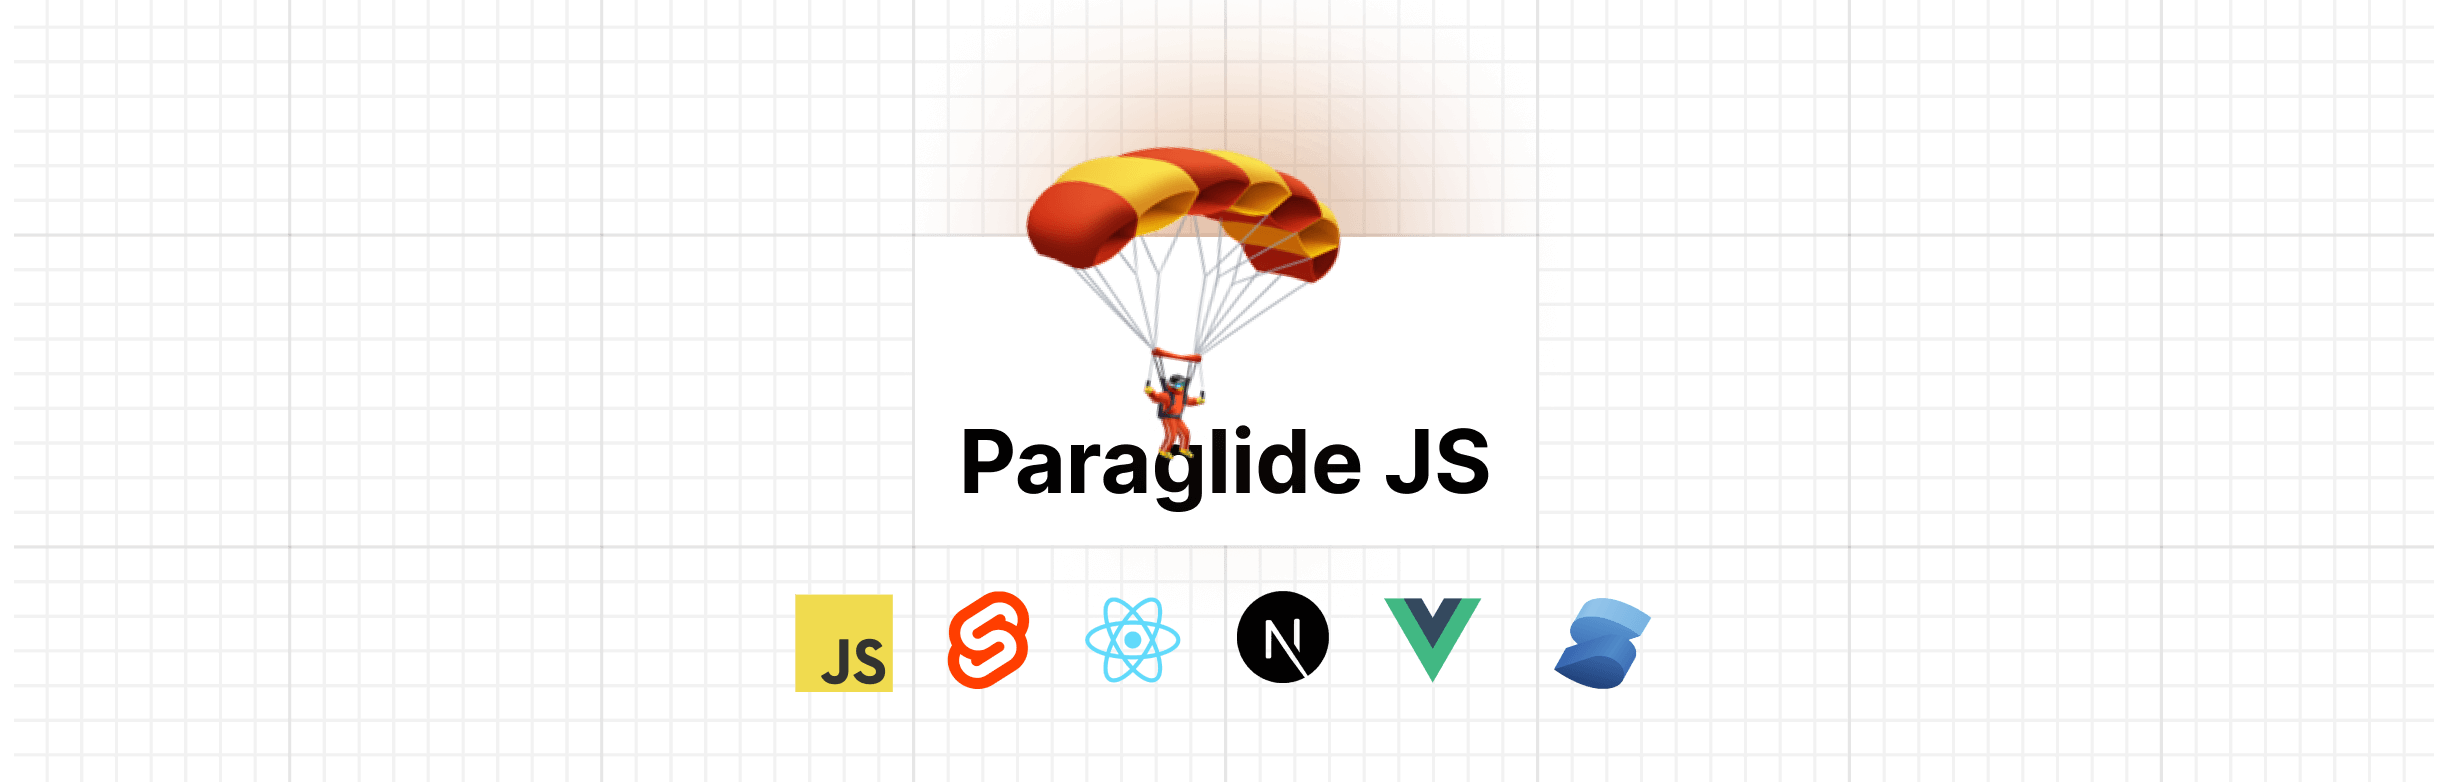 Paraglide JS header image